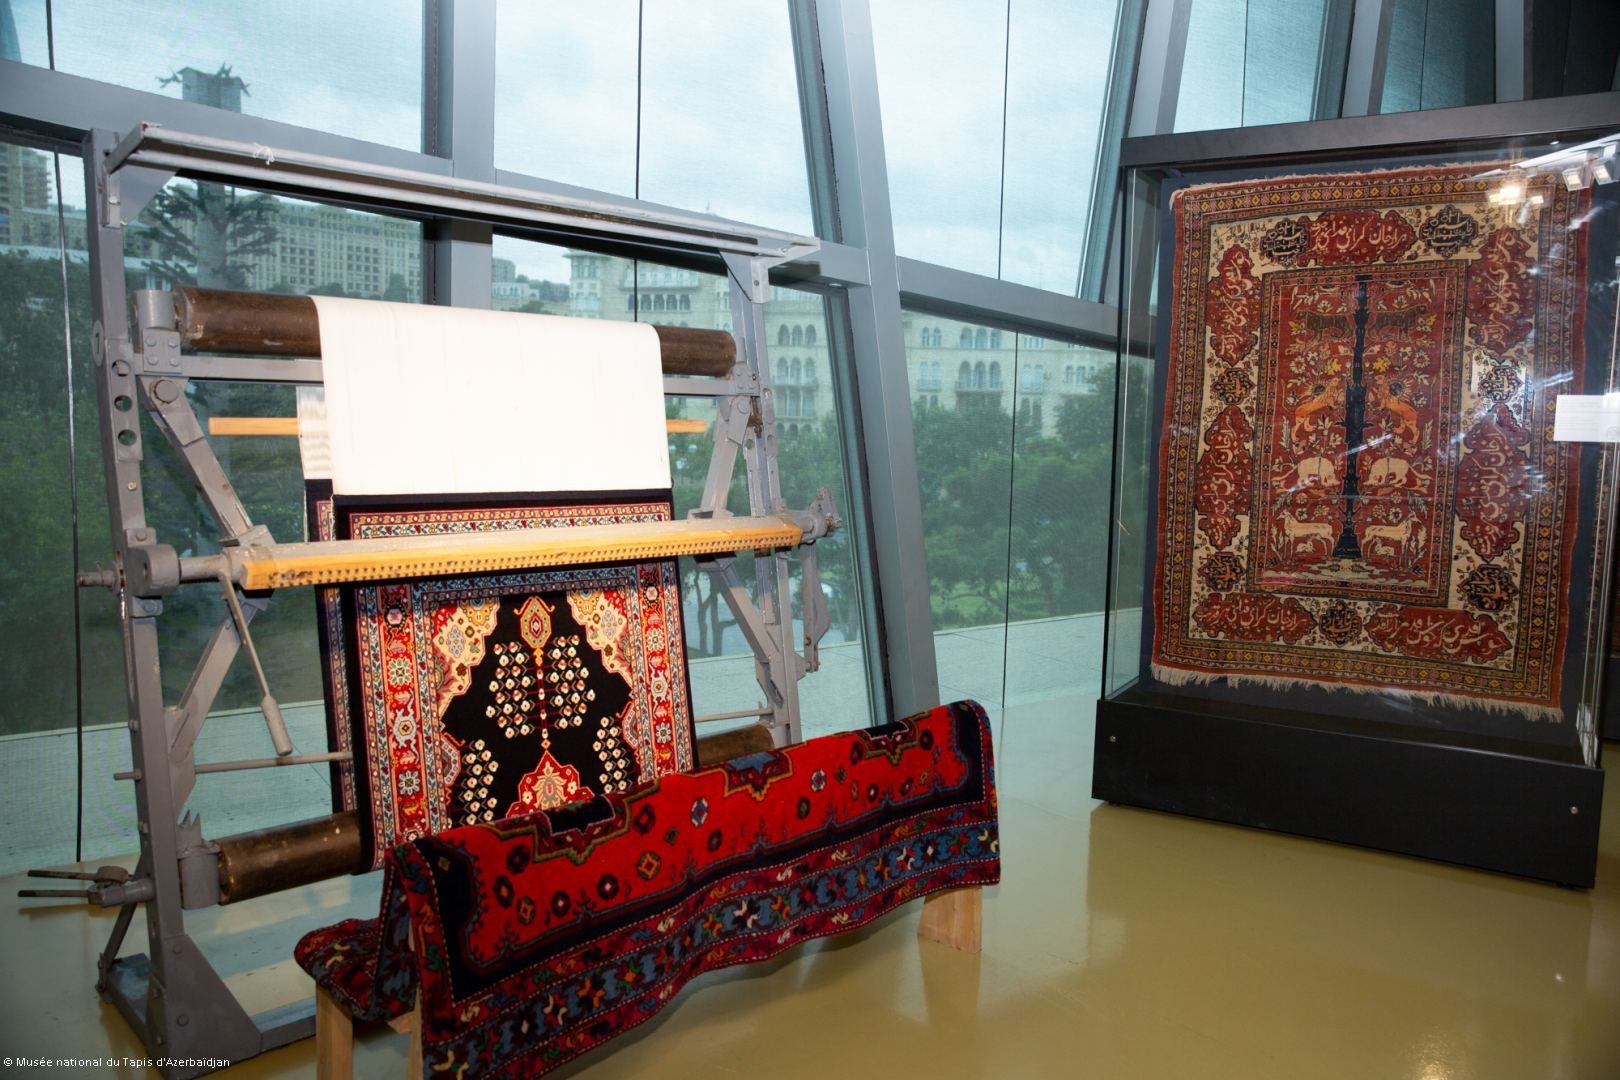 Le Musée national du Tapis d'Azerbaïdjan accueille une cérémonie de la découpe du tapis du Karabagh « Khanlyg » sur le métier à tisser